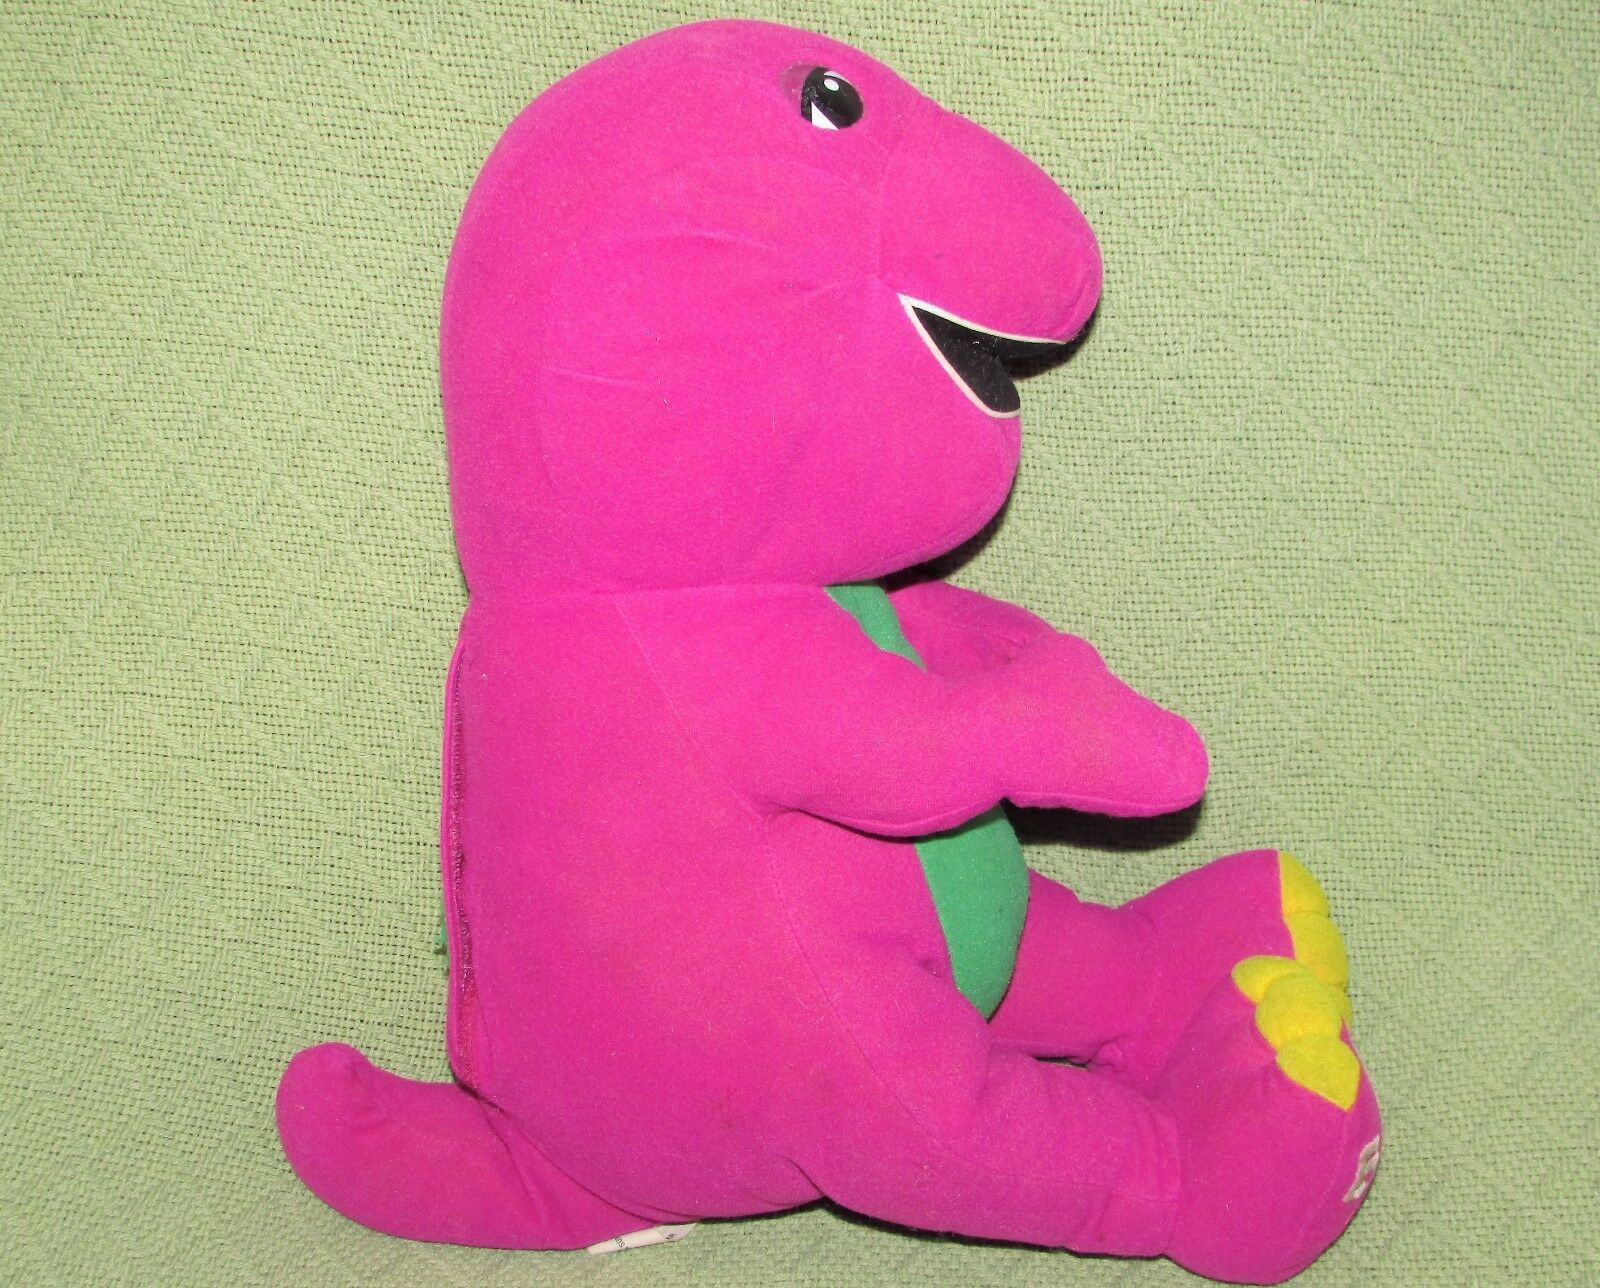 Vintage Talking Barney Playskool 1996 16